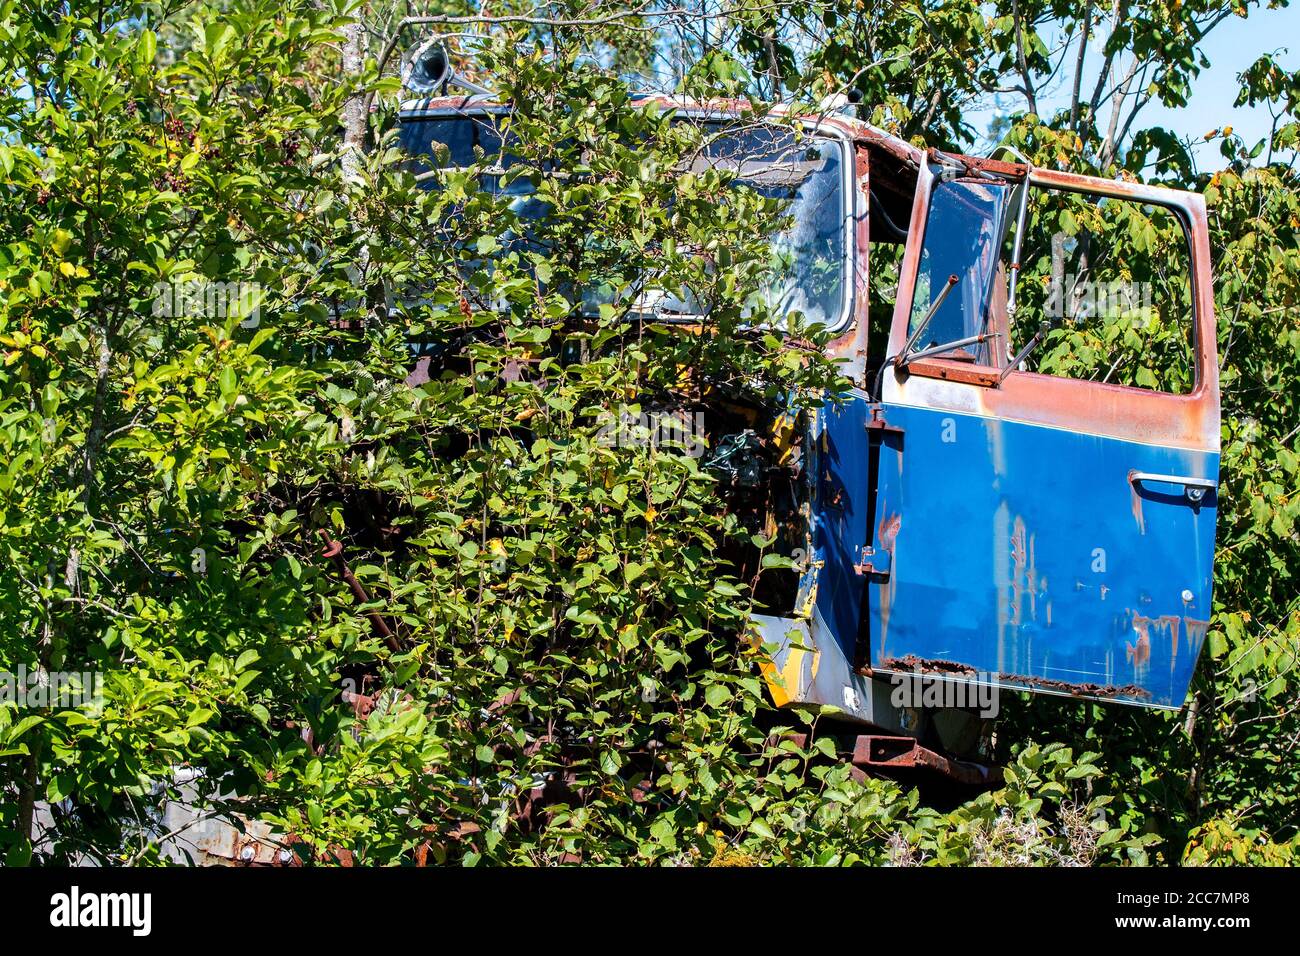 Die Vorderseite eines alten verlassenen LKW. Bäume wachsen von und um den LKW herum, aber eine blaue Tür ist sichtbar. Fahrzeug ist nicht identifizierbar. Stockfoto